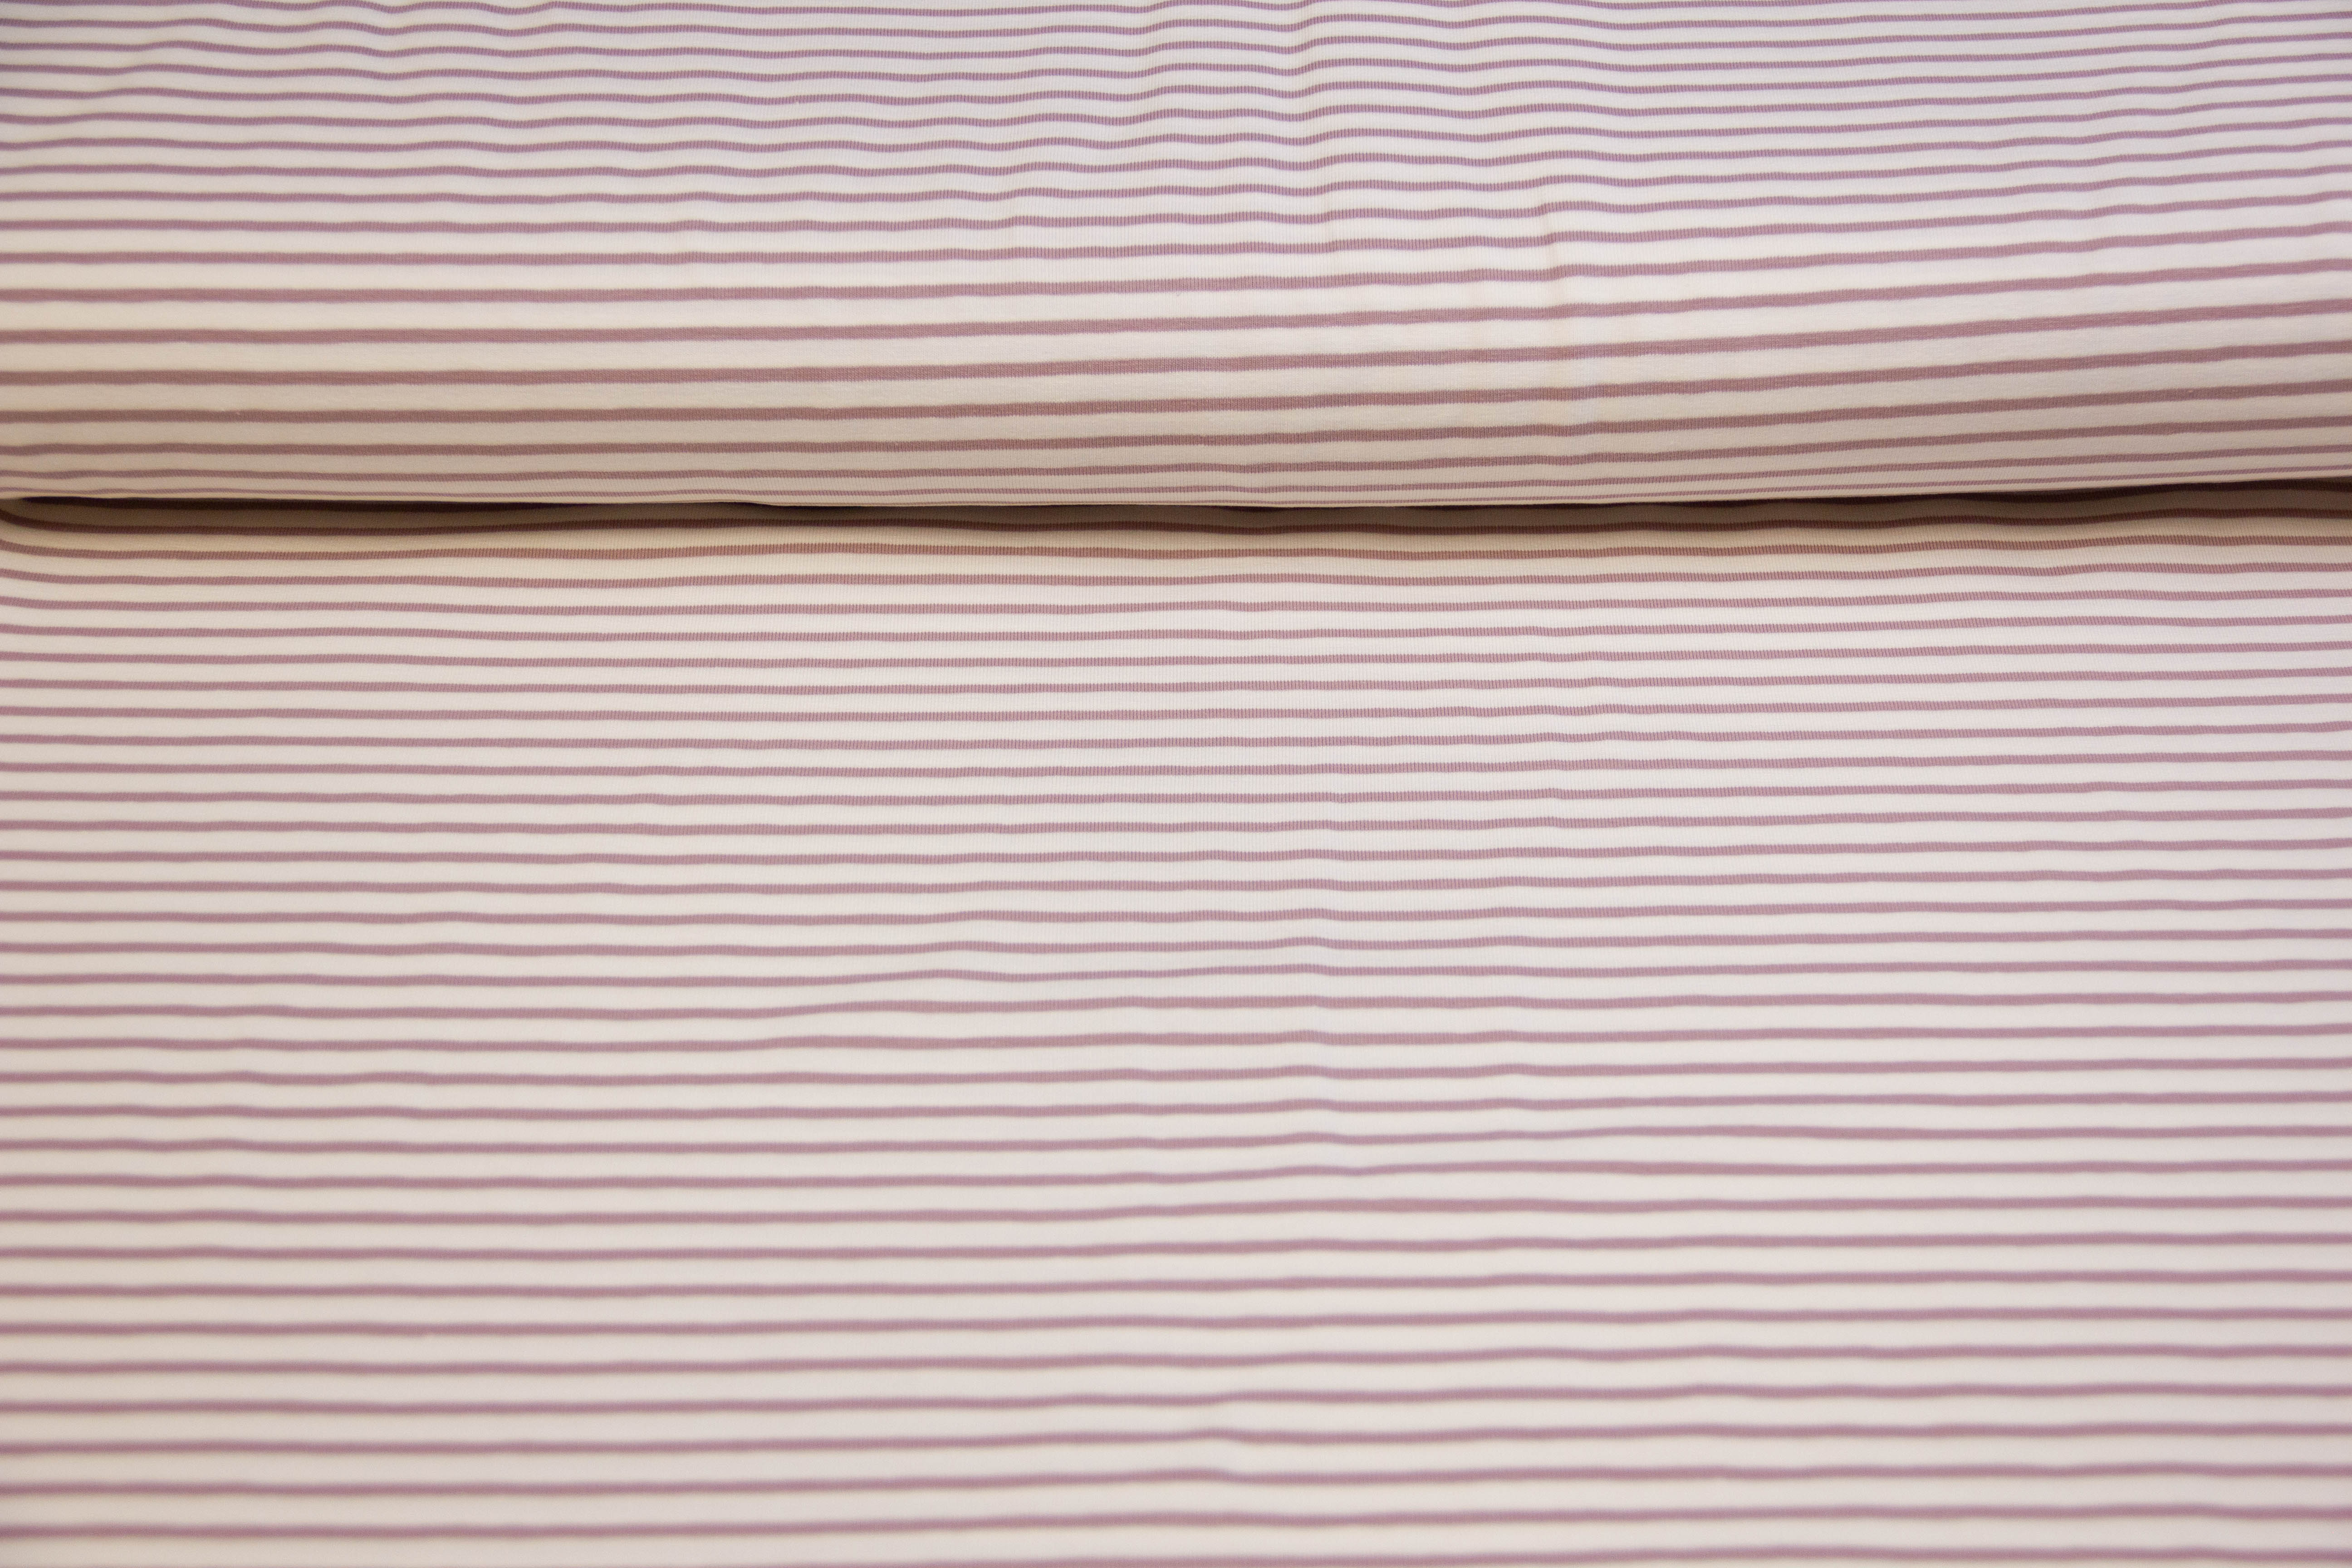 Restmenge 50 cm Jersey mit Streifen, weiß, malve